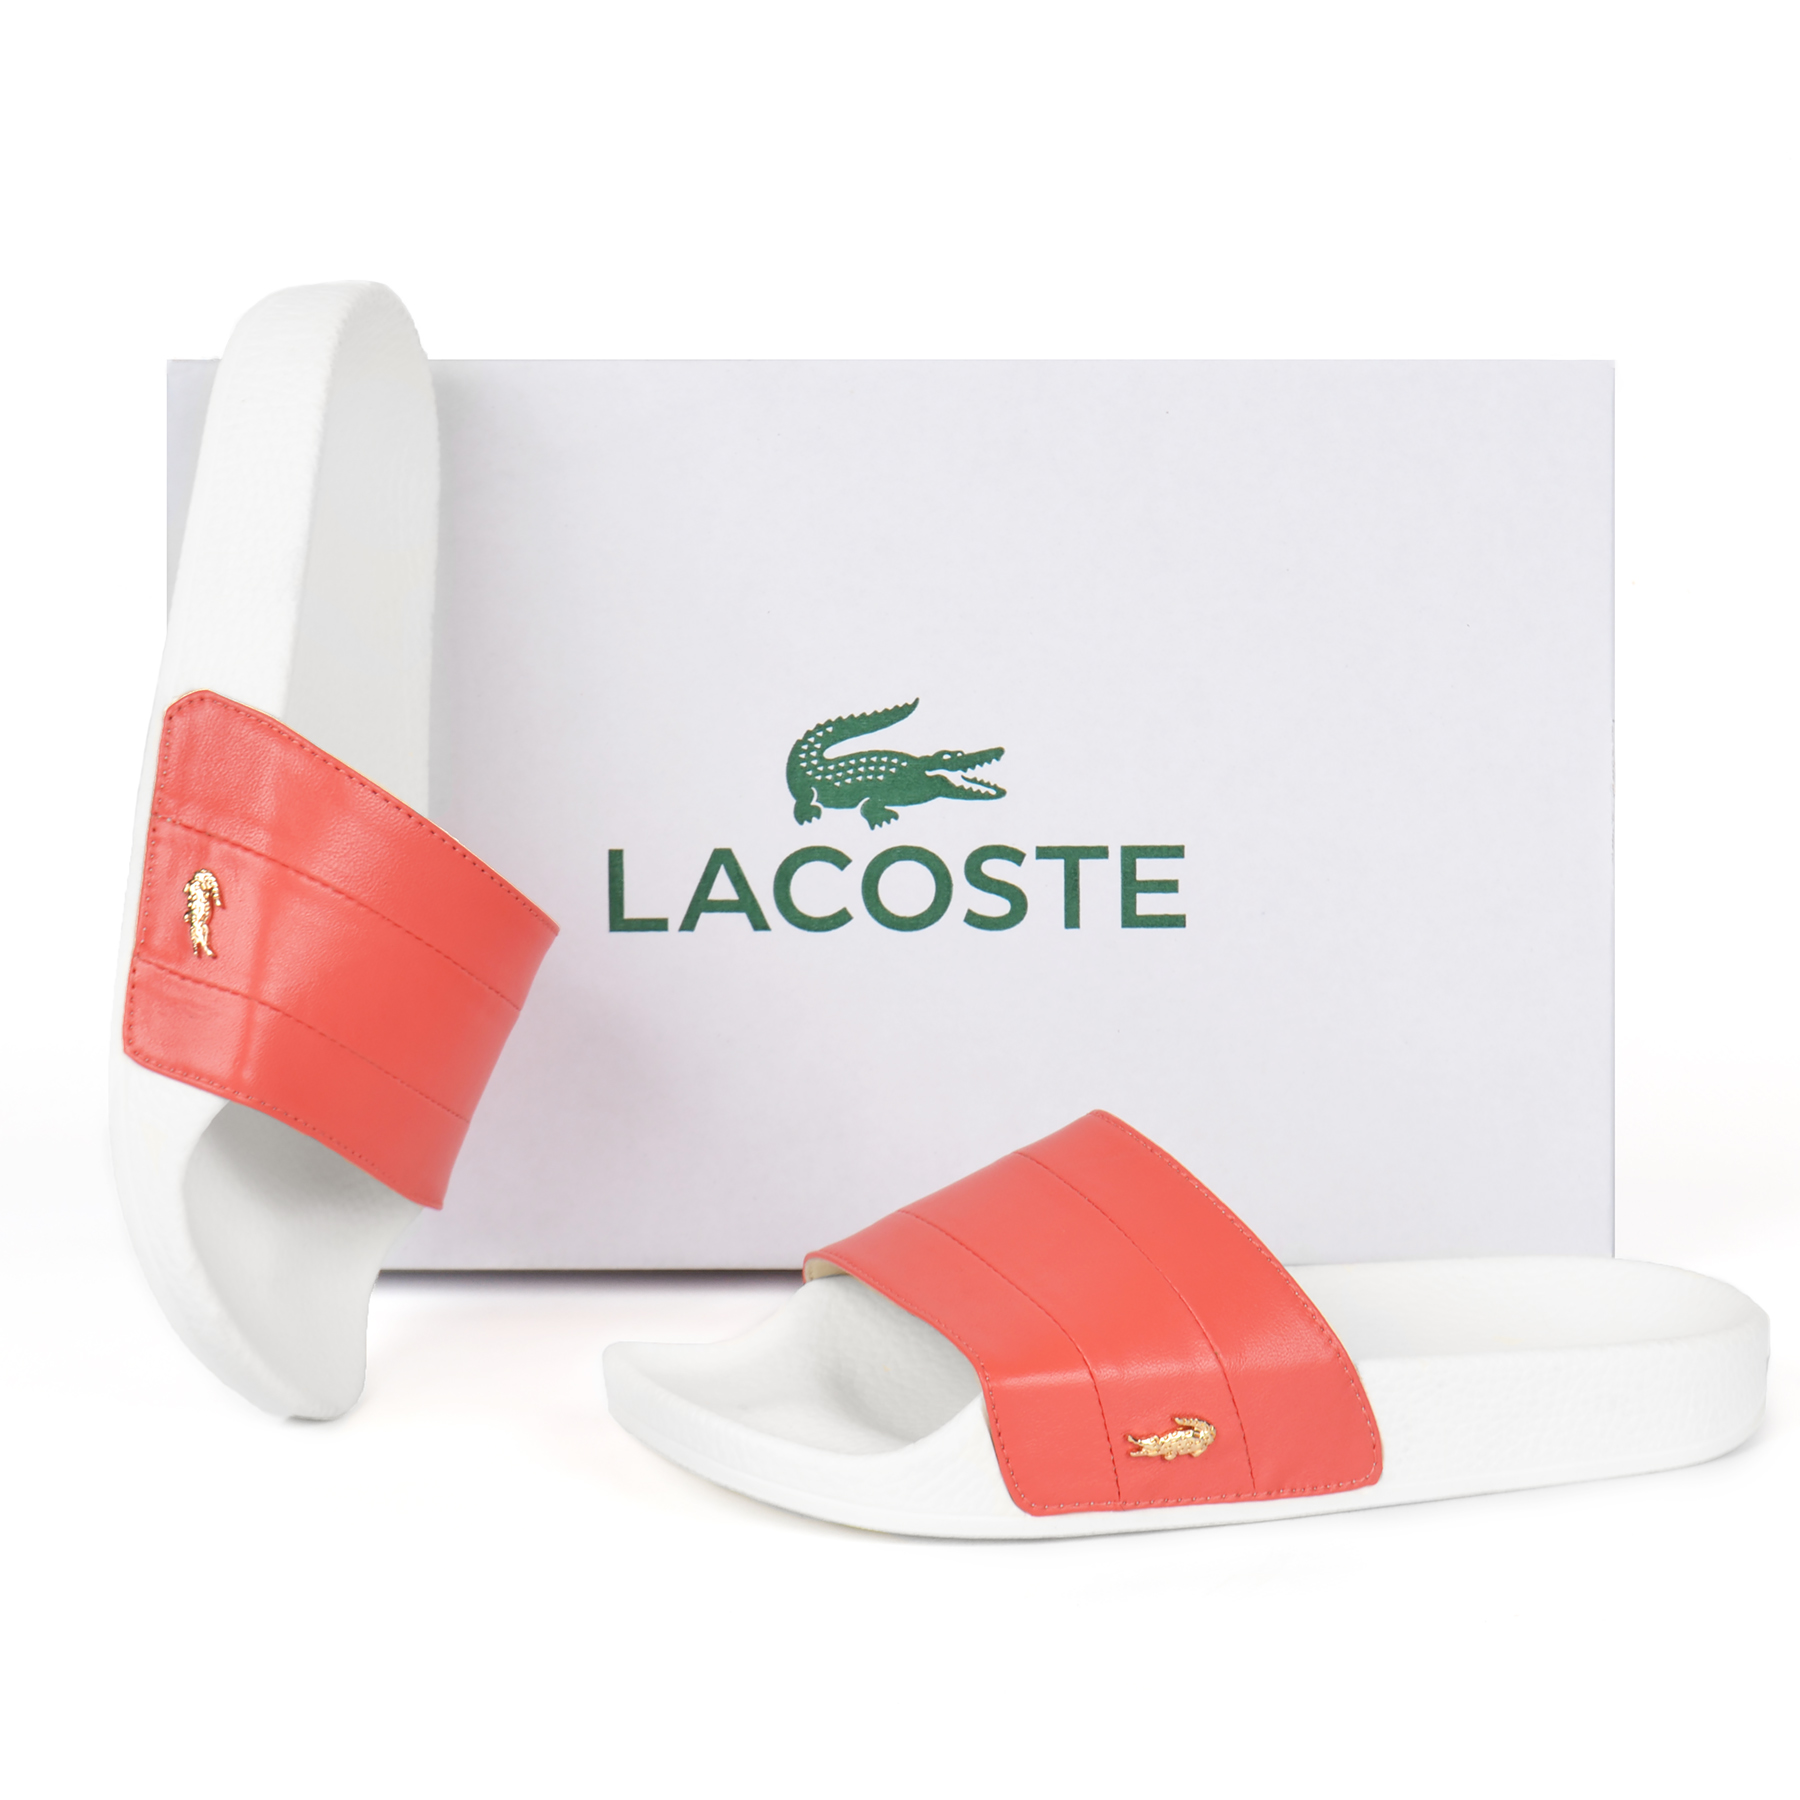 Шлепанцы Lacoste женские из натуральной кожи кораллового цвета на белой подошве самый модный хит 2020 года купить в Украине интернет-магазин обуви nanogu.com.ua